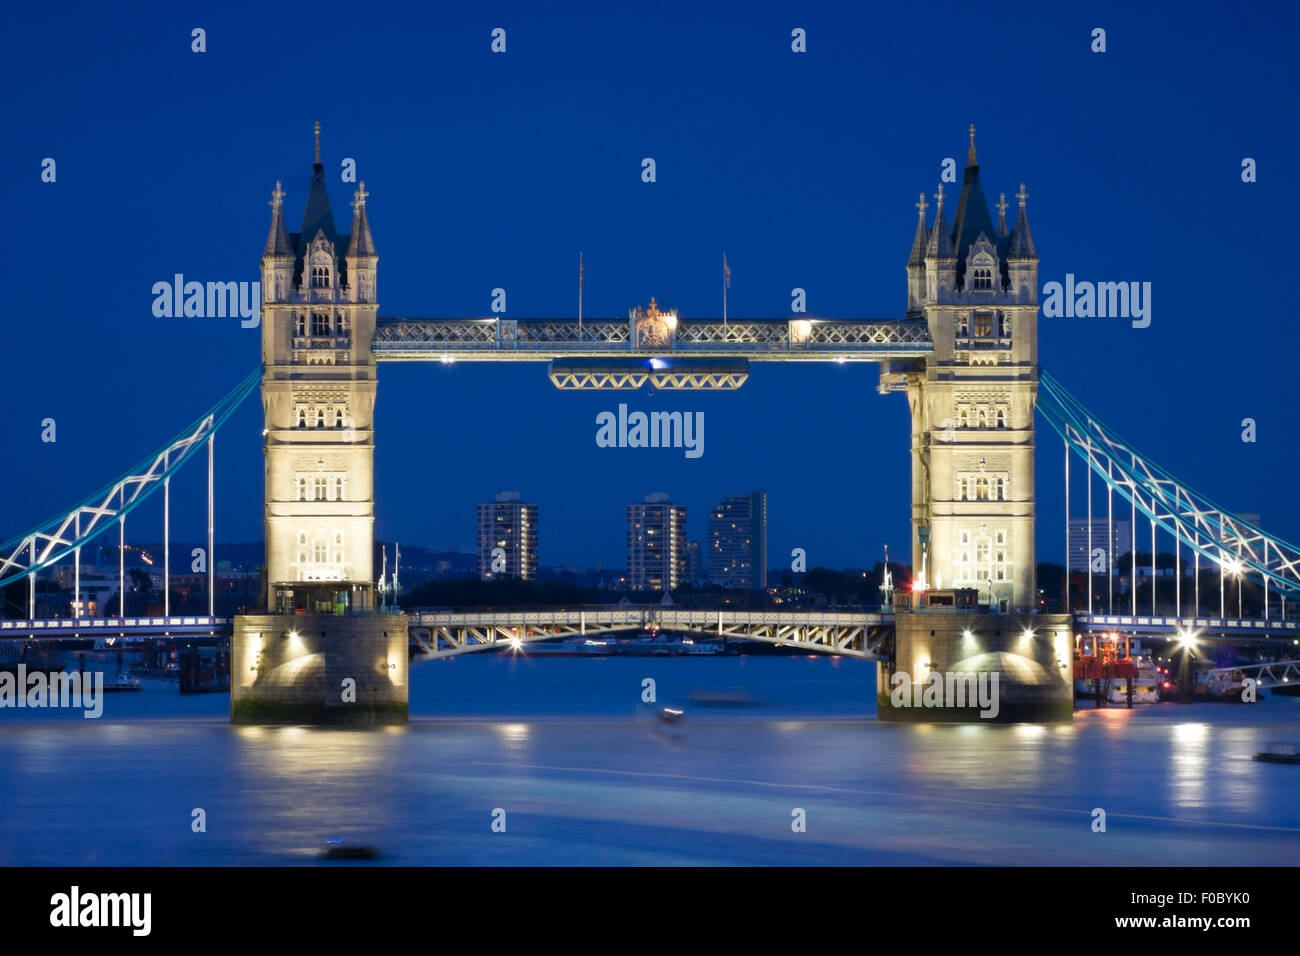 La London Tower Bridge illuminé la nuit de temps et de réflexions dans l'eau Banque D'Images